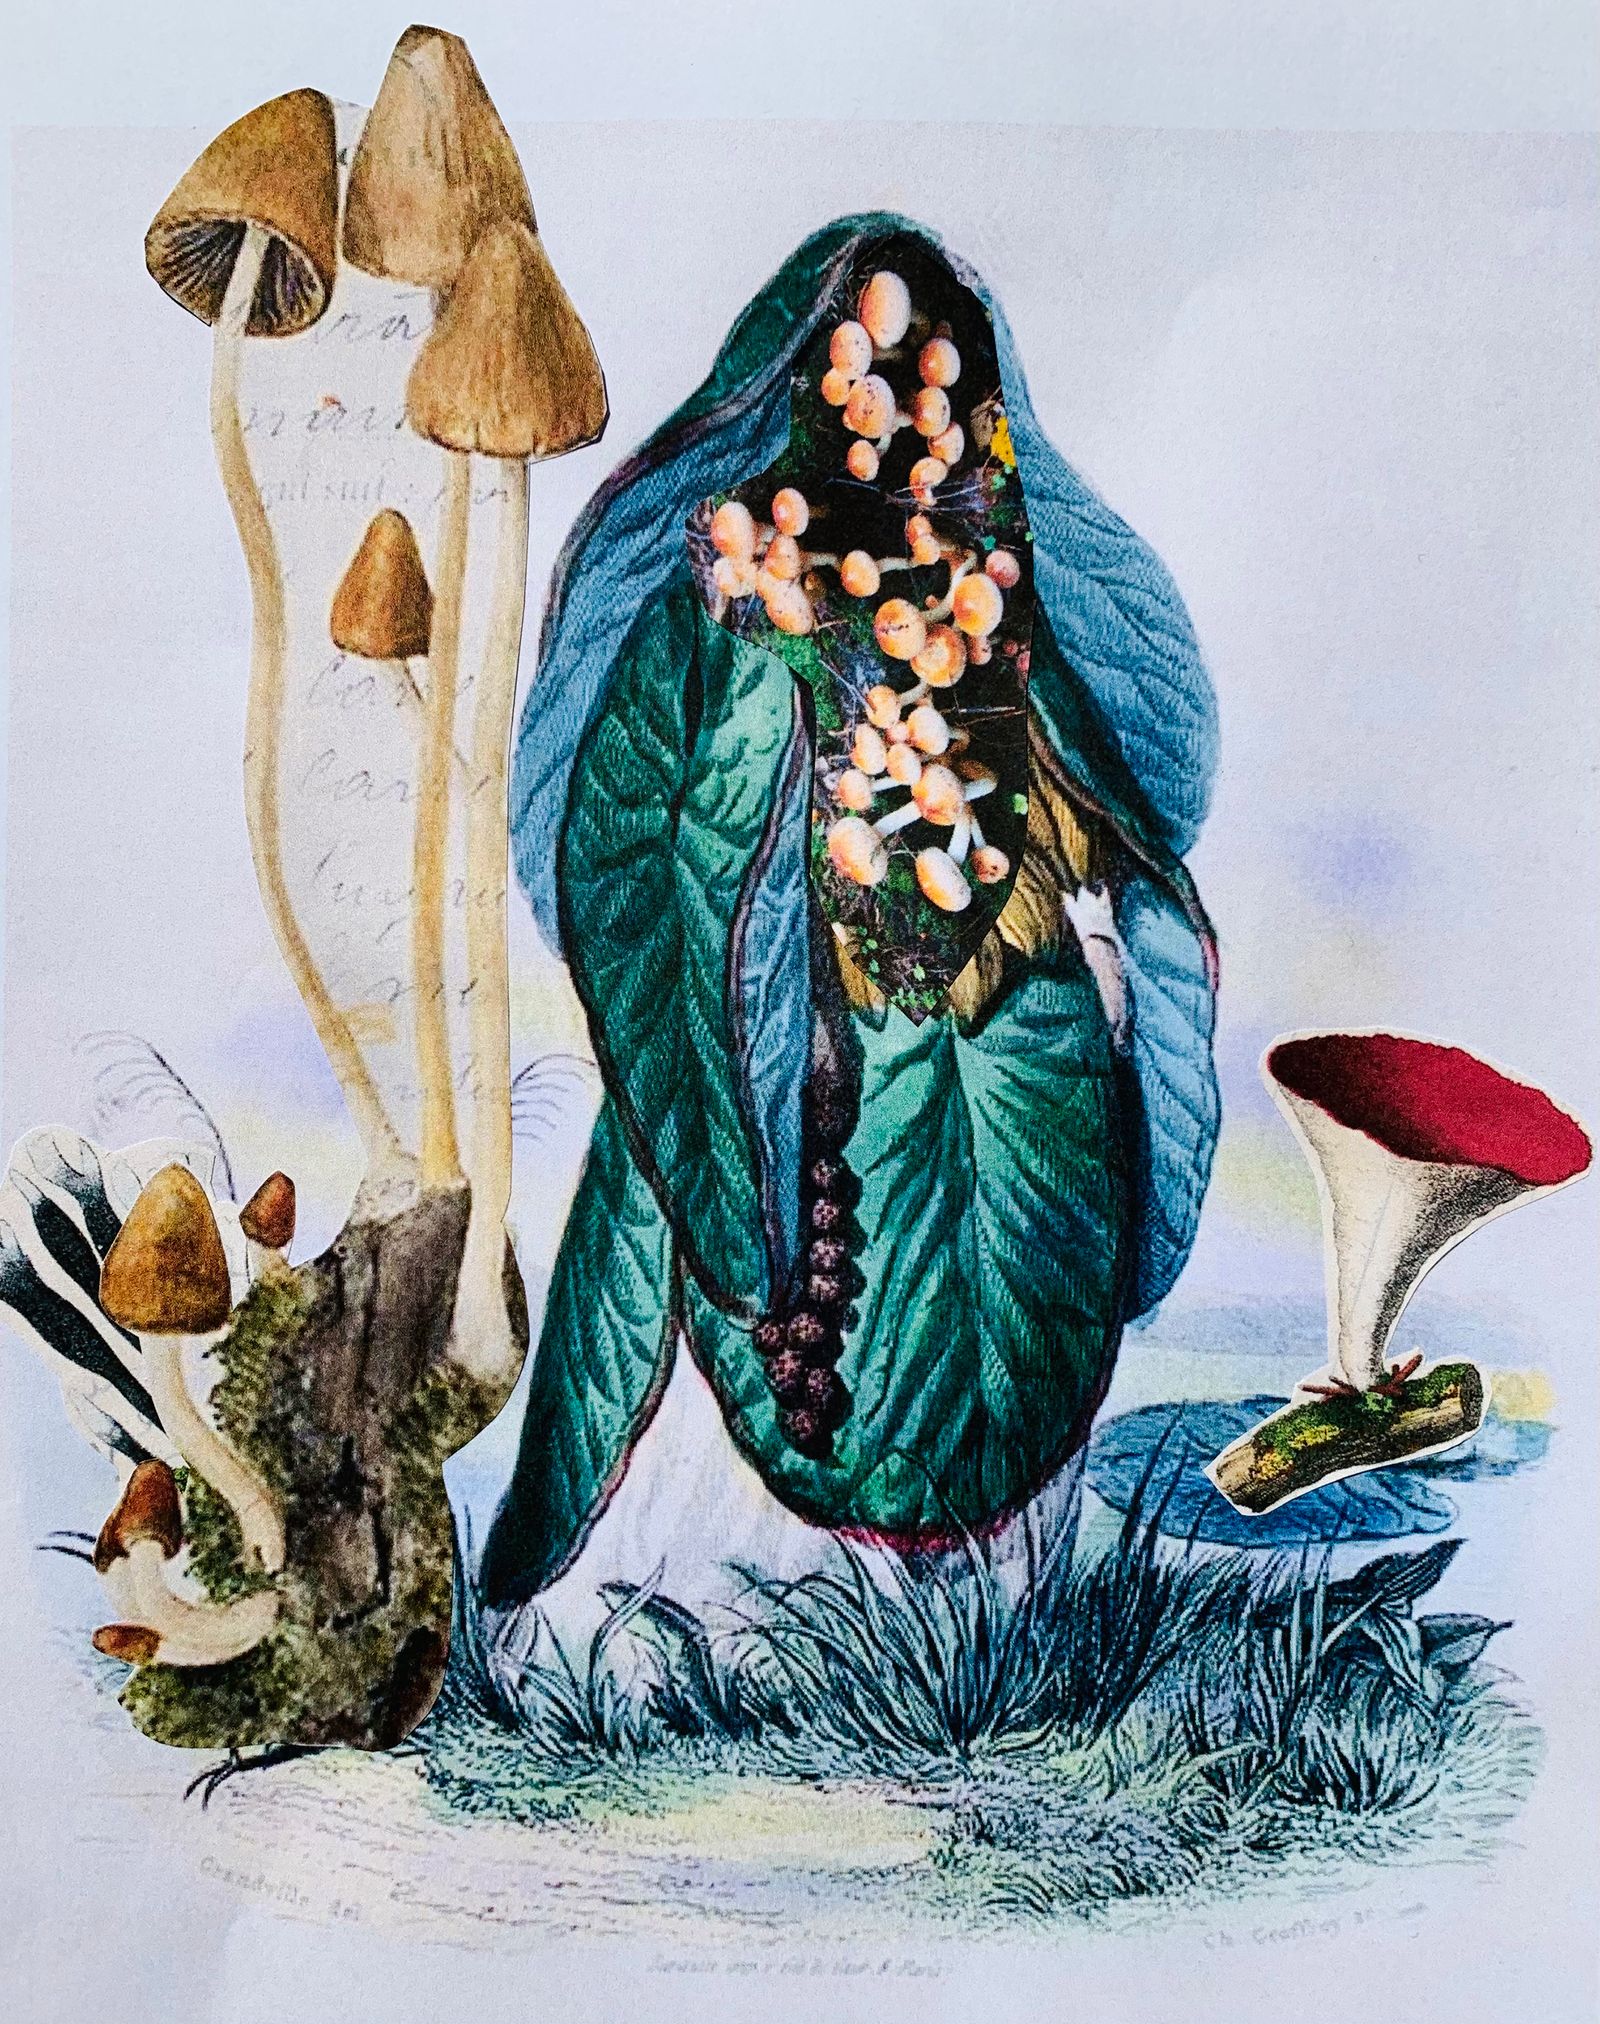 © Camila Rodrigo - Mushrooms as guides